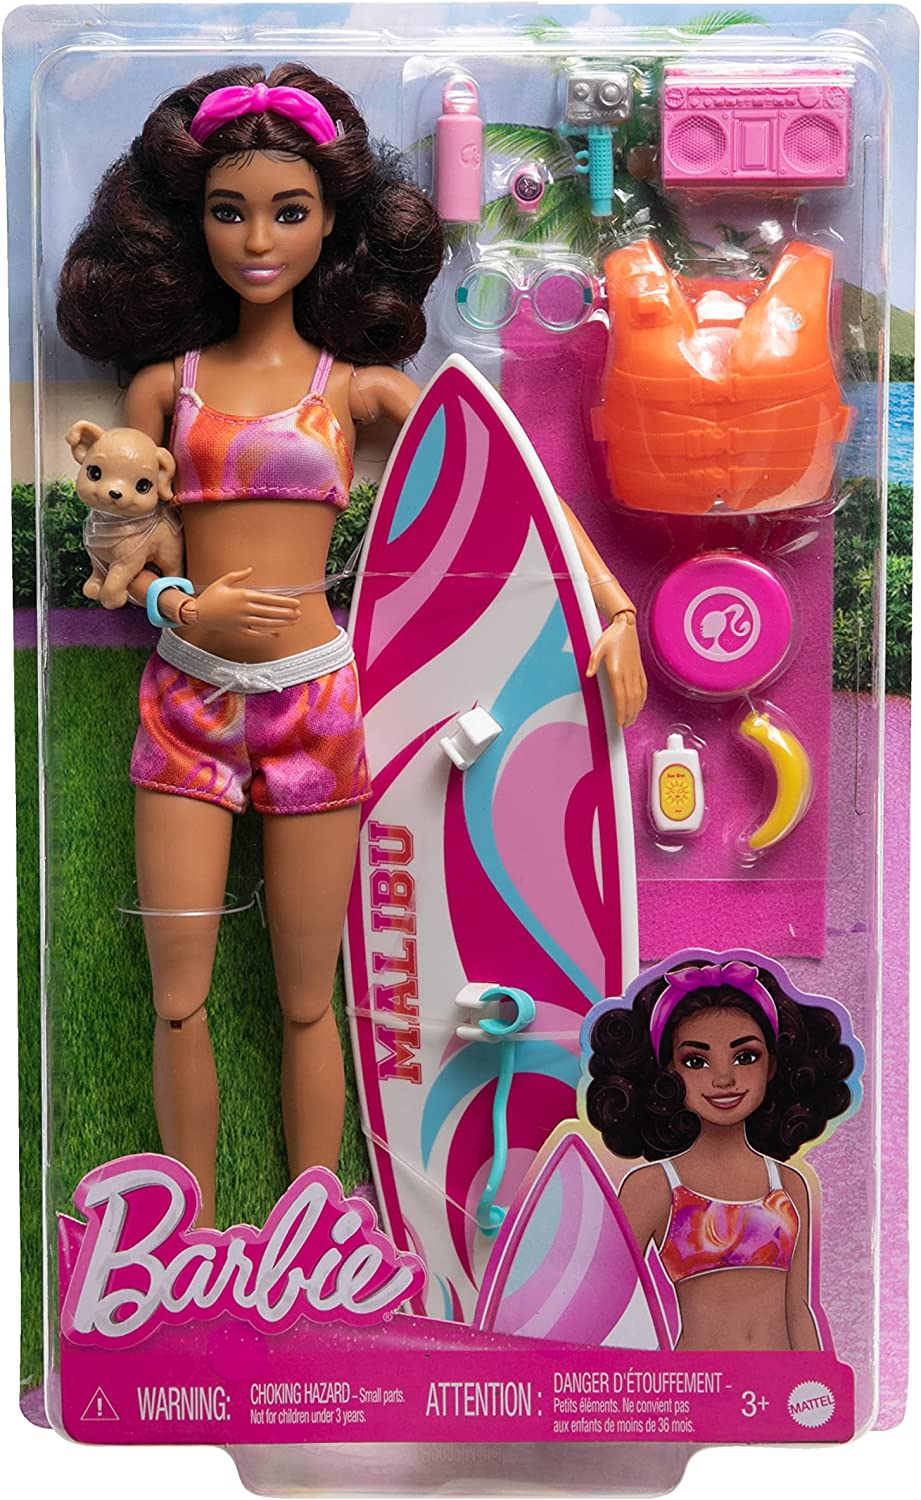 Barbie Boneca com prancha de surfe e cachorrinho de estimação, boneca de praia Barbie morena articulável com acessórios temáticos como toalha e aparelho de som, HPL69